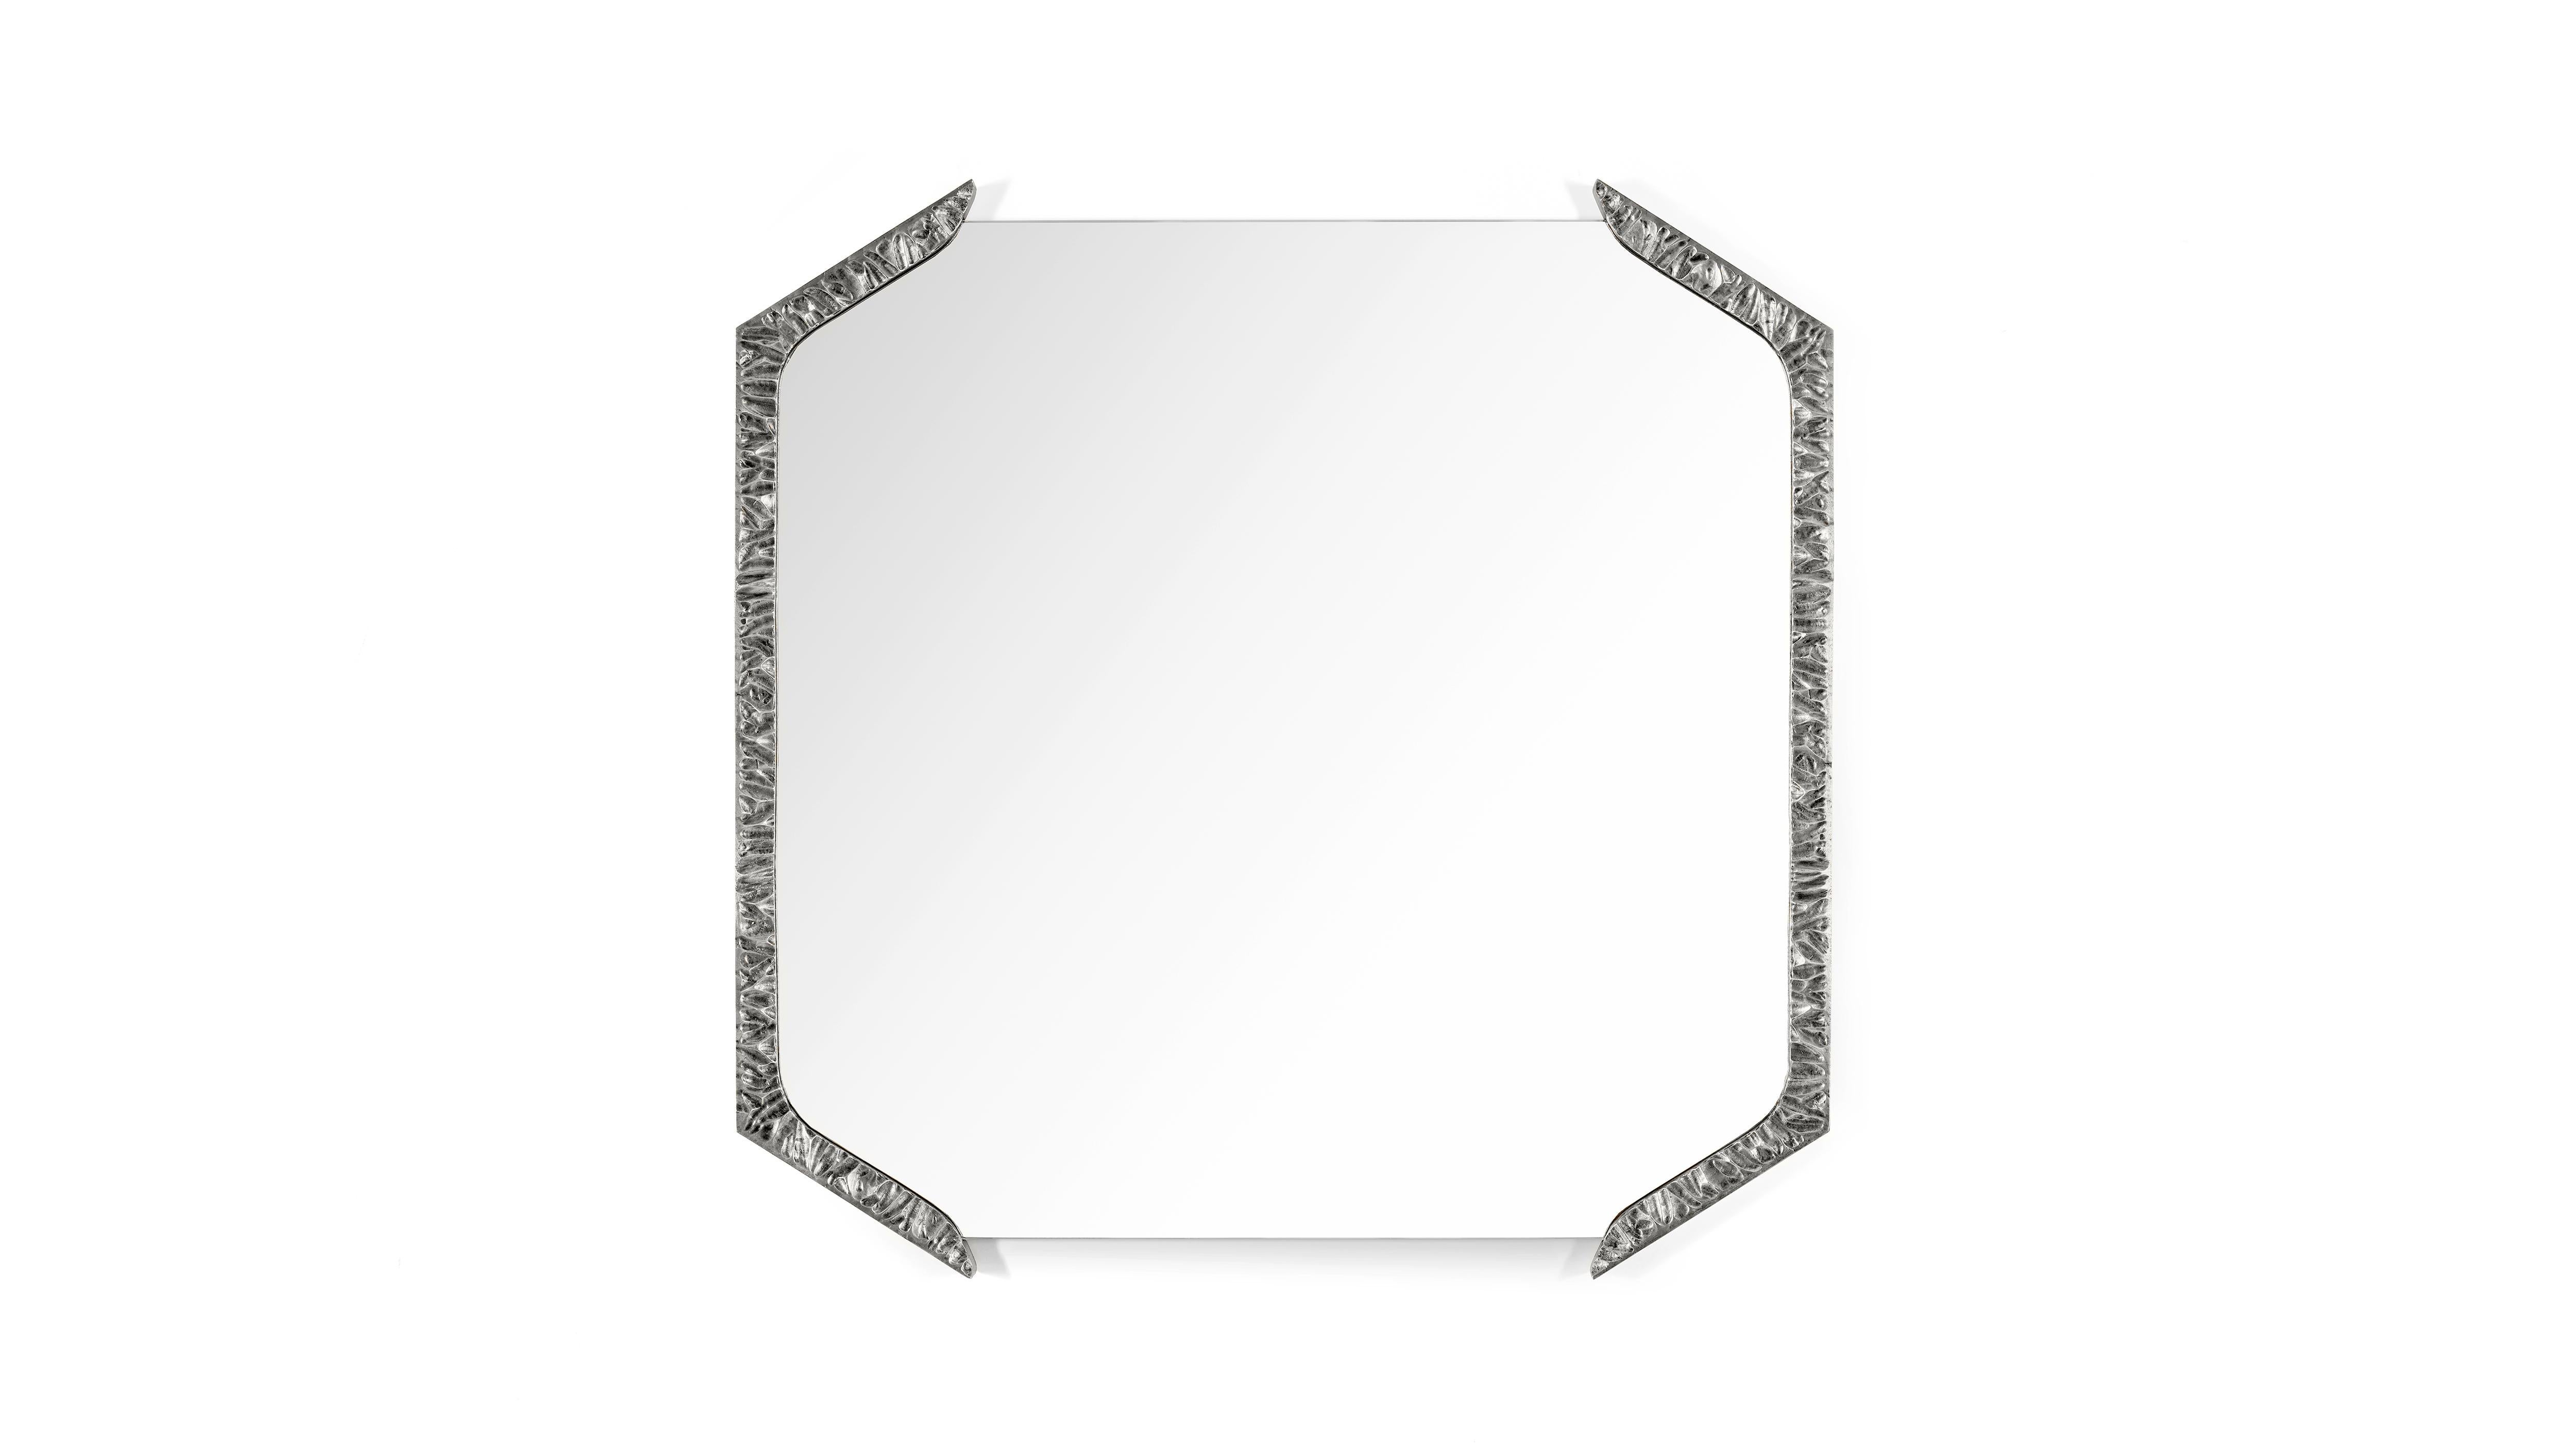 Alentejo Nickel Quadratischer Spiegel von InsidherLand
Abmessungen: T 3 x B 85 x H 85 cm.
MATERIALIEN: Messingguss mit Nickelbad, klarer Spiegel.
22 kg.
Erhältlich in anderen Ausführungen.

Der Alentejo-Spiegel hat einen ähnlichen konzeptionellen